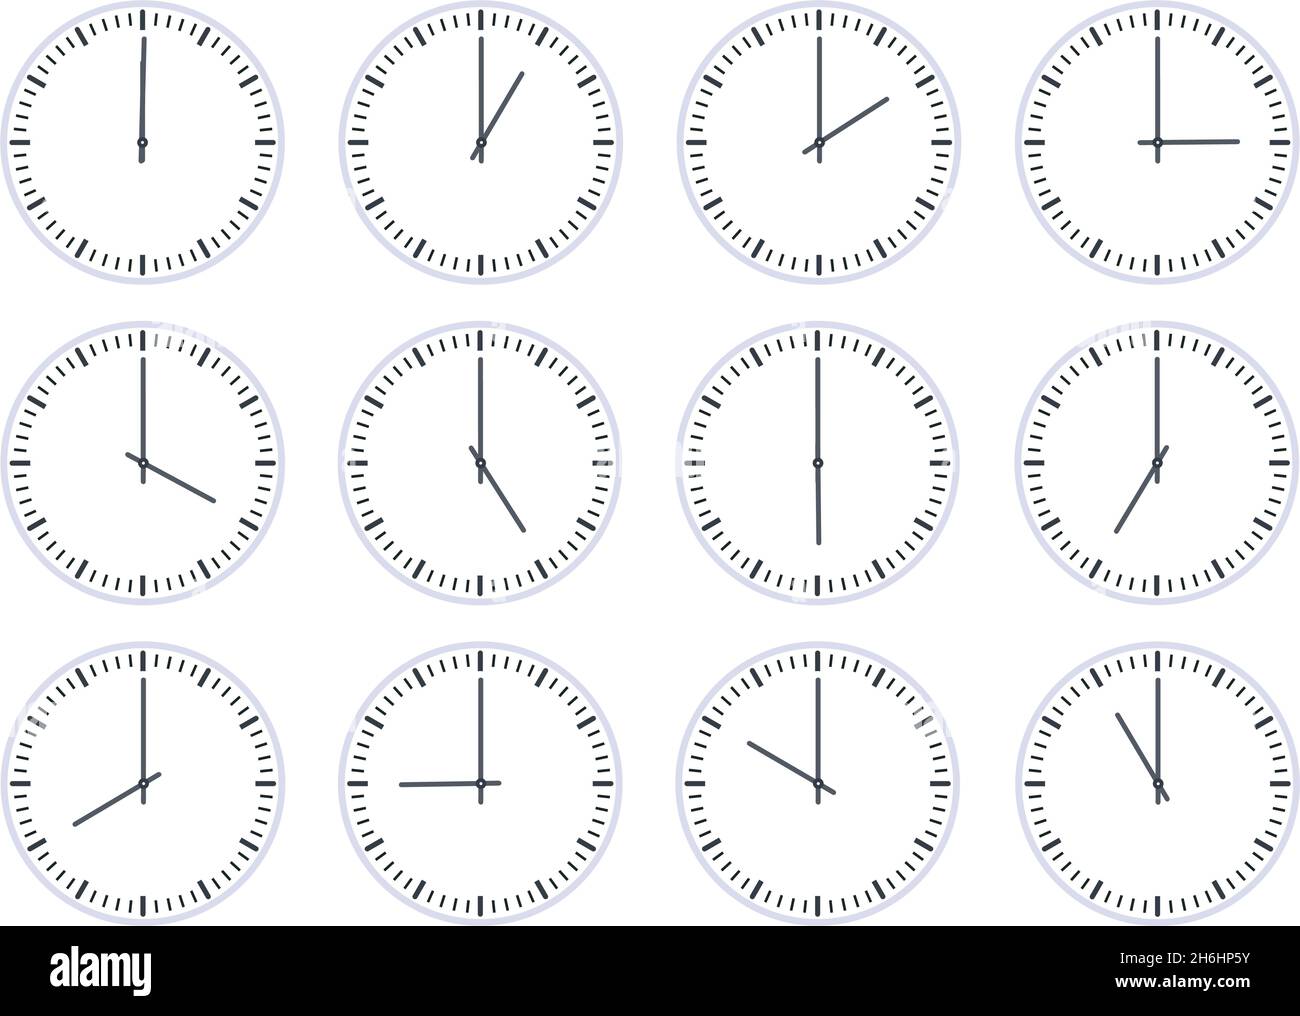 Icono de reloj de círculo analógico que muestra la hora cada hora. Pantalla plana de reloj con 12 horas, animación con temporizador. Relojes de pared de una a doce horas de juego vectorial Ilustración del Vector